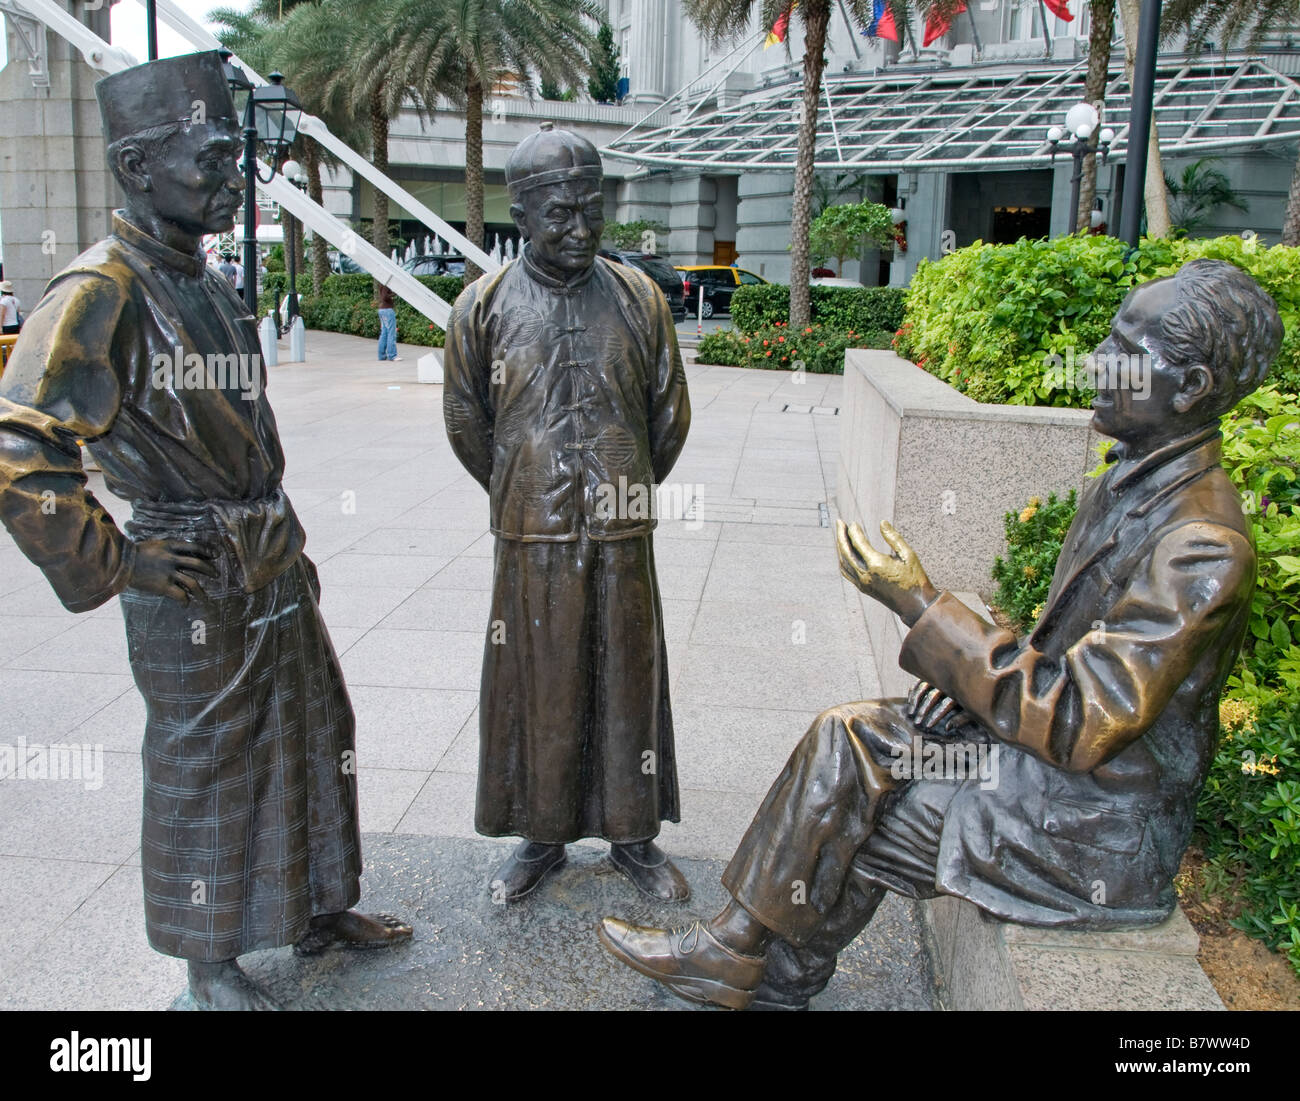 La rivière par les marchands Tee AW sculpteur sculpture statue Longue rivière Singapour Chinatown downtown CBD Banque D'Images